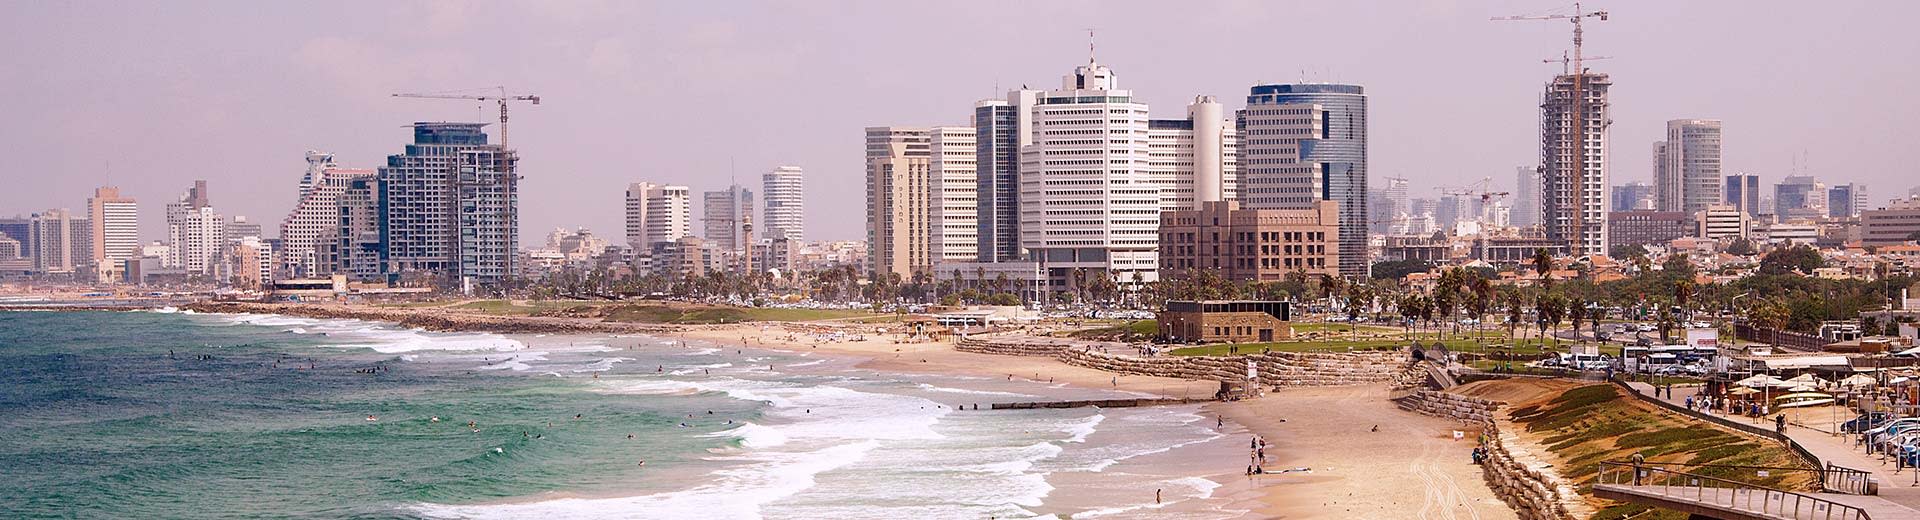 Bajo un nublado Sky de Tel Aviv se encuentra algunos rascacielos y hoteles genéricos, mientras que una playa casi vacía está en primer plano.